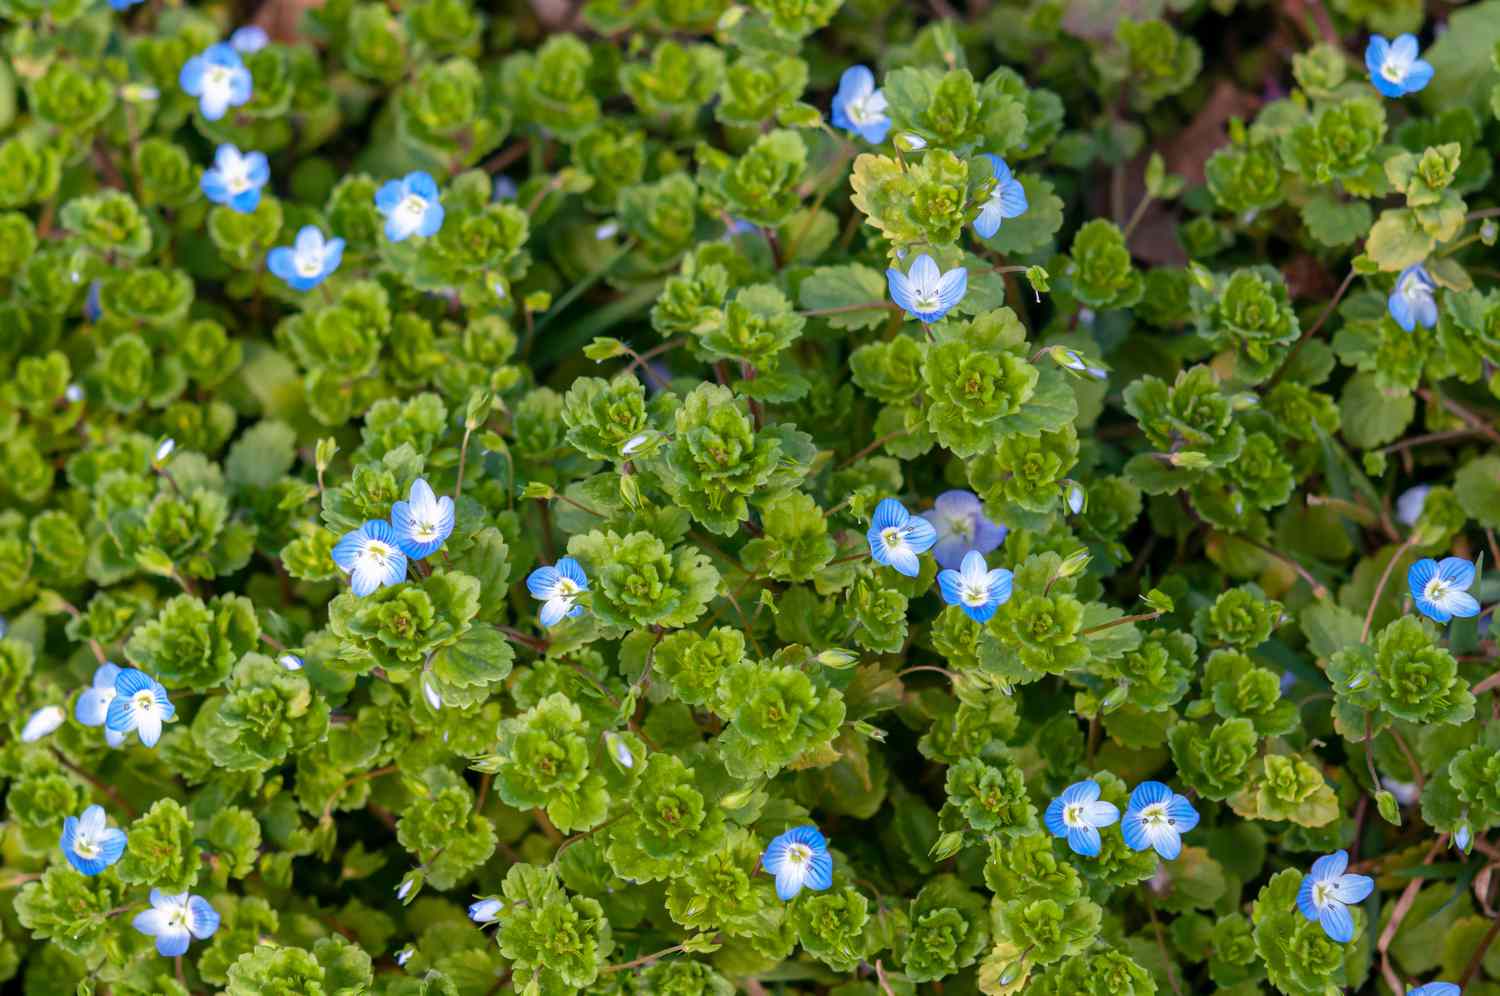 Kriechender Ehrenpreis mit muschelförmigen Blättern, die mit kleinen blauen Blüten besetzt sind